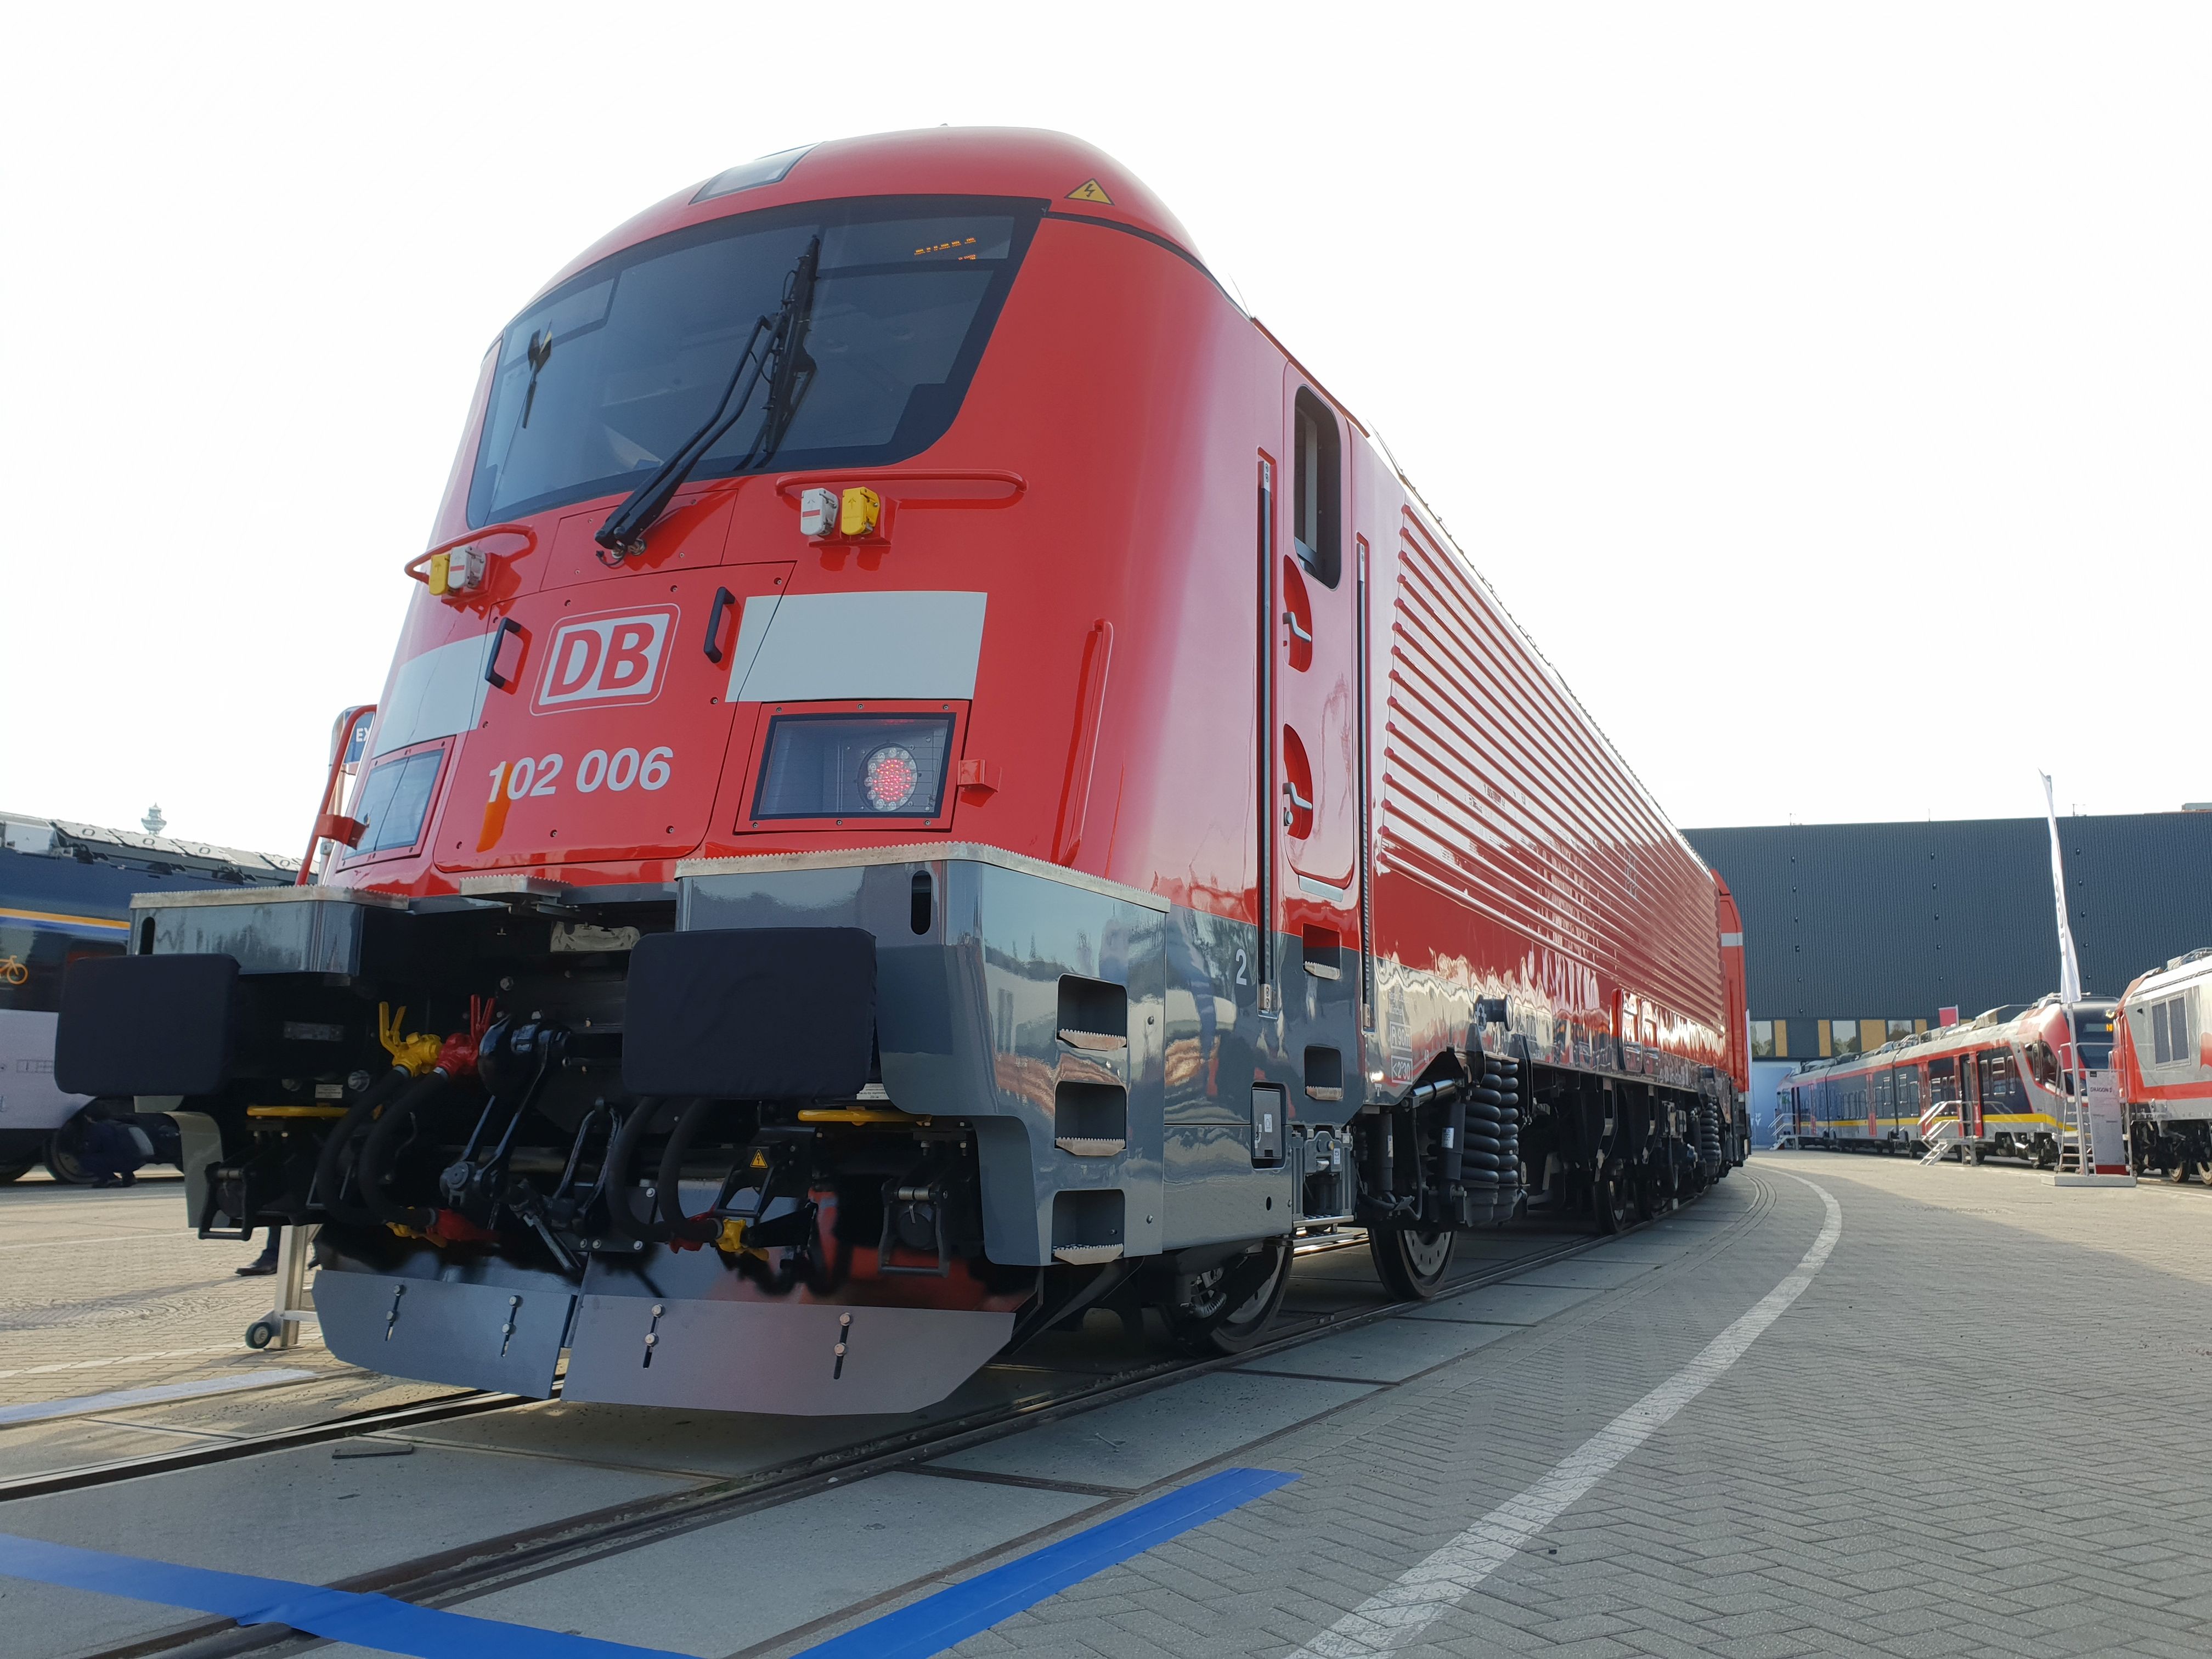 Foto: Elok 102 006 von Skoda für den Nürnberg-Ingolstadt-München-Express auf der Berliner Innotrans 2018